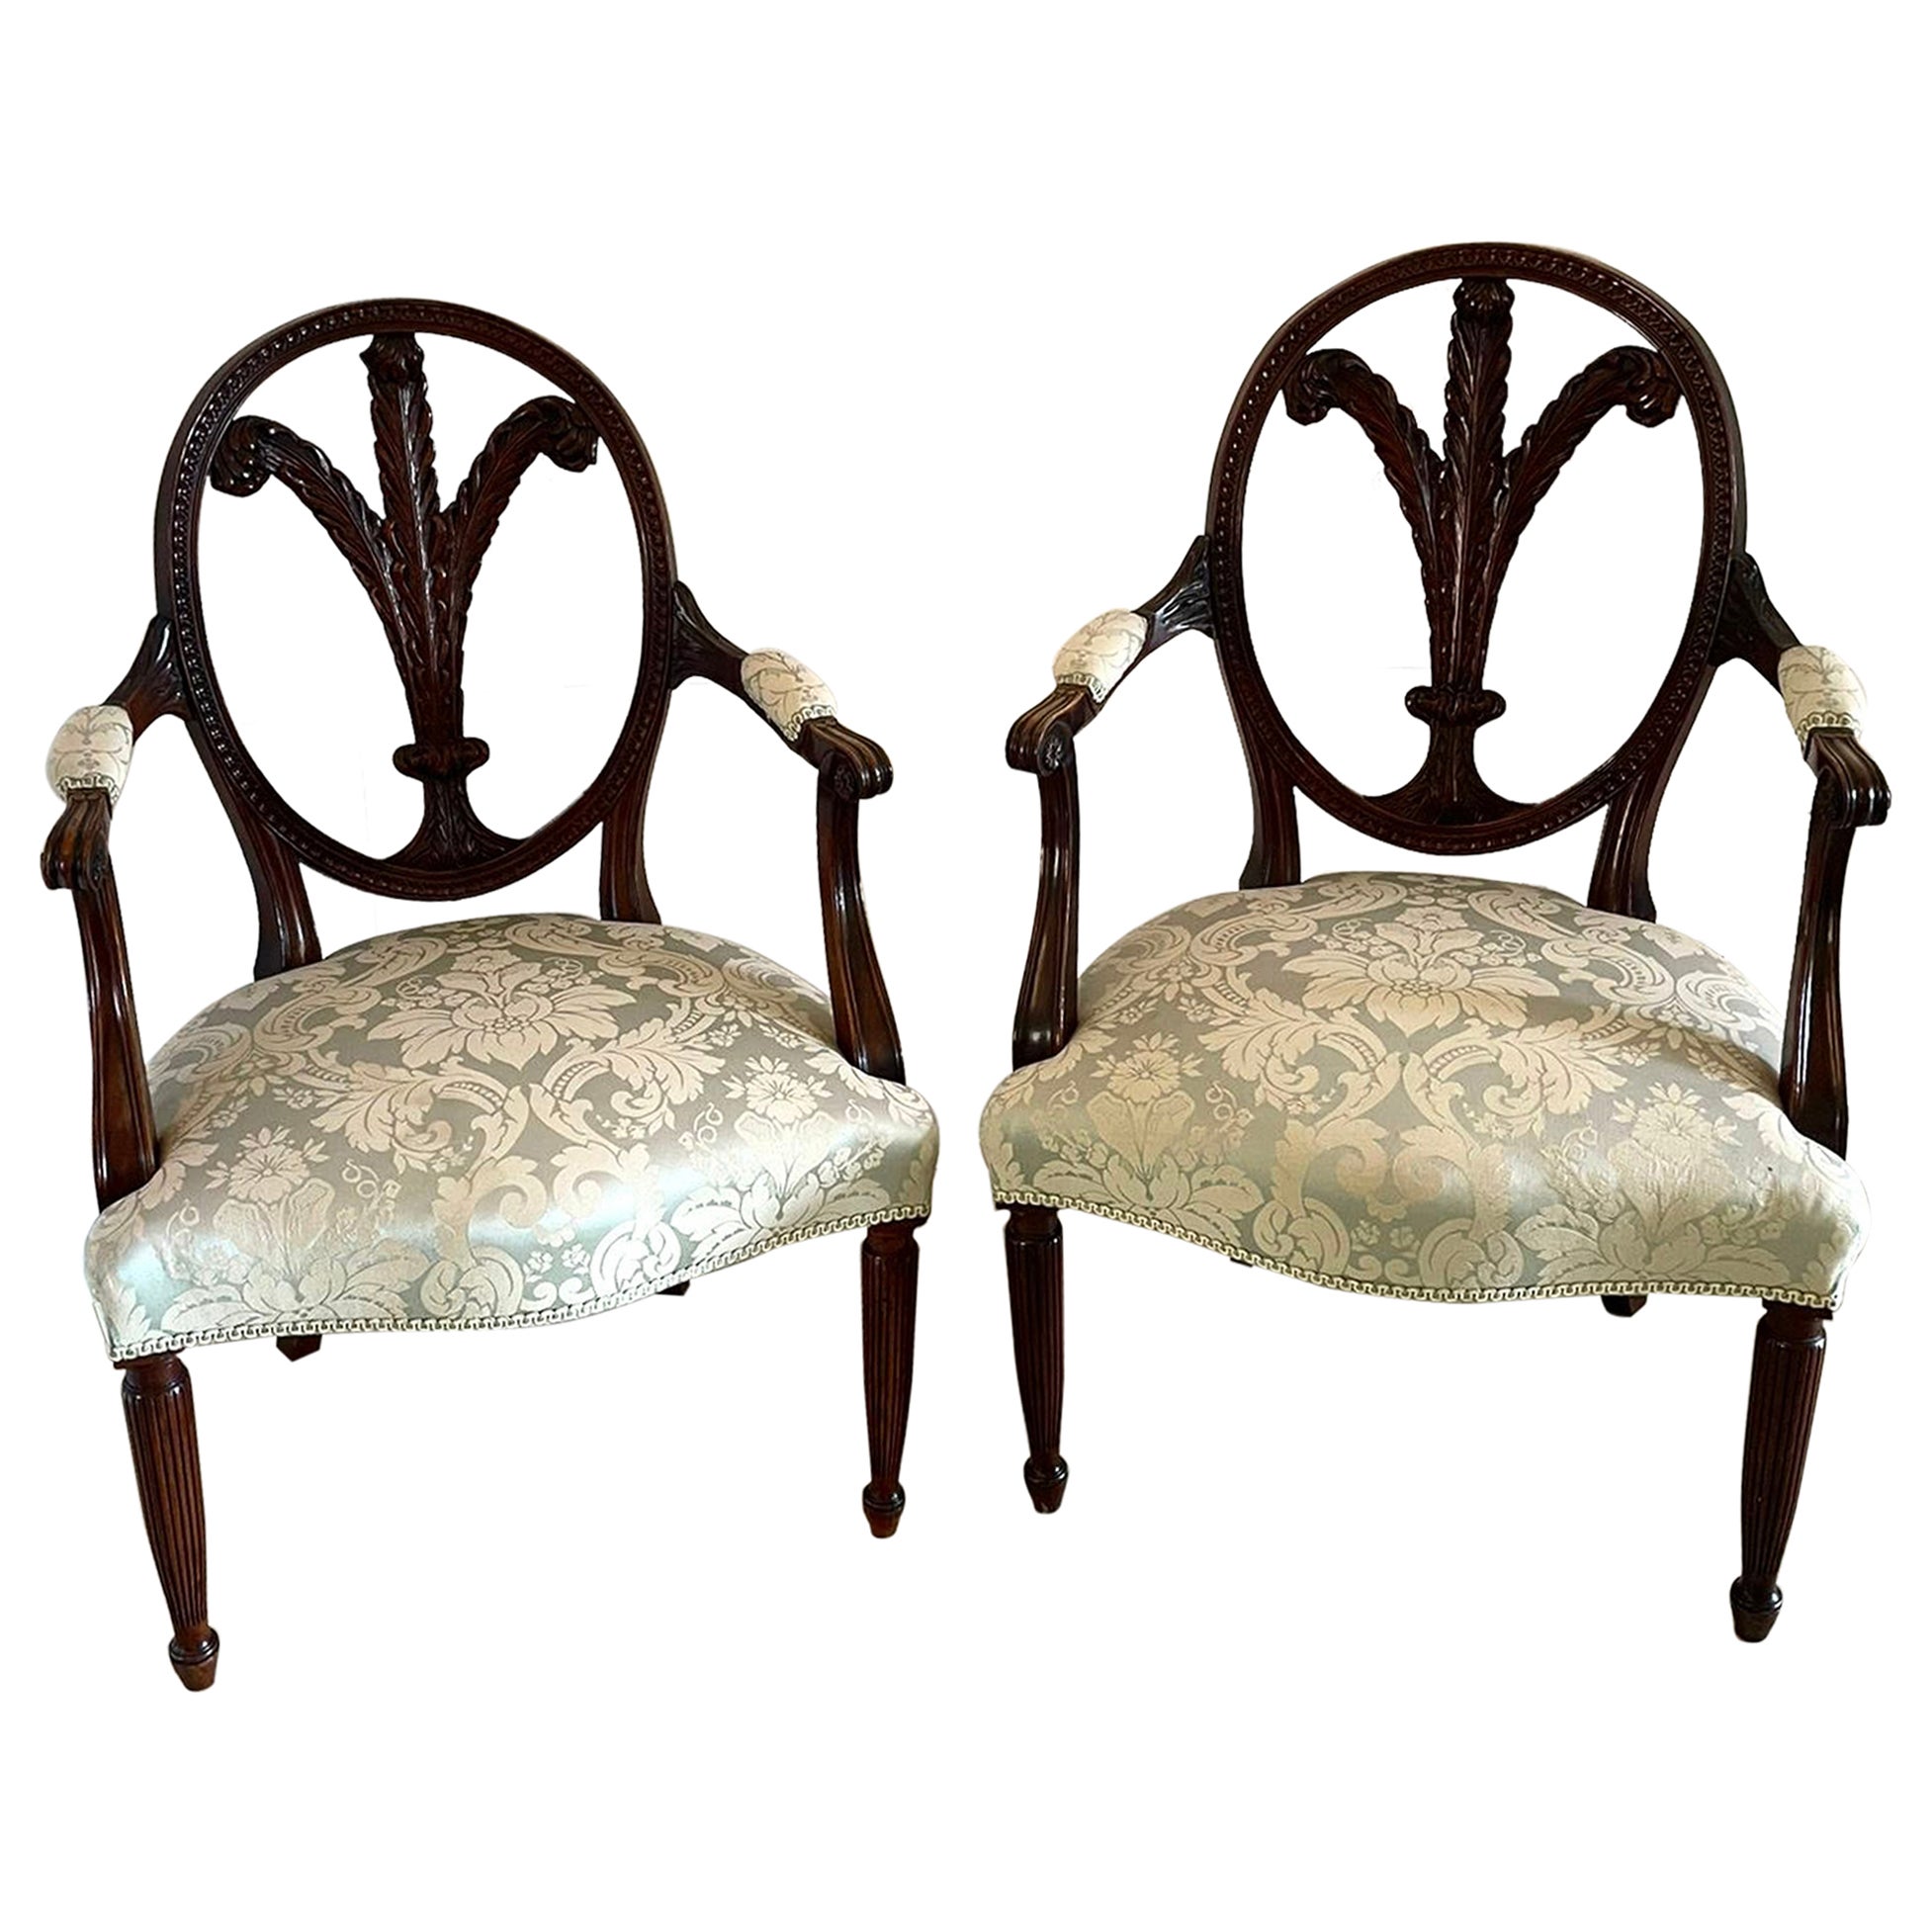 Paar antike geschnitzte Mahagoni-Sessel von hoher Qualität